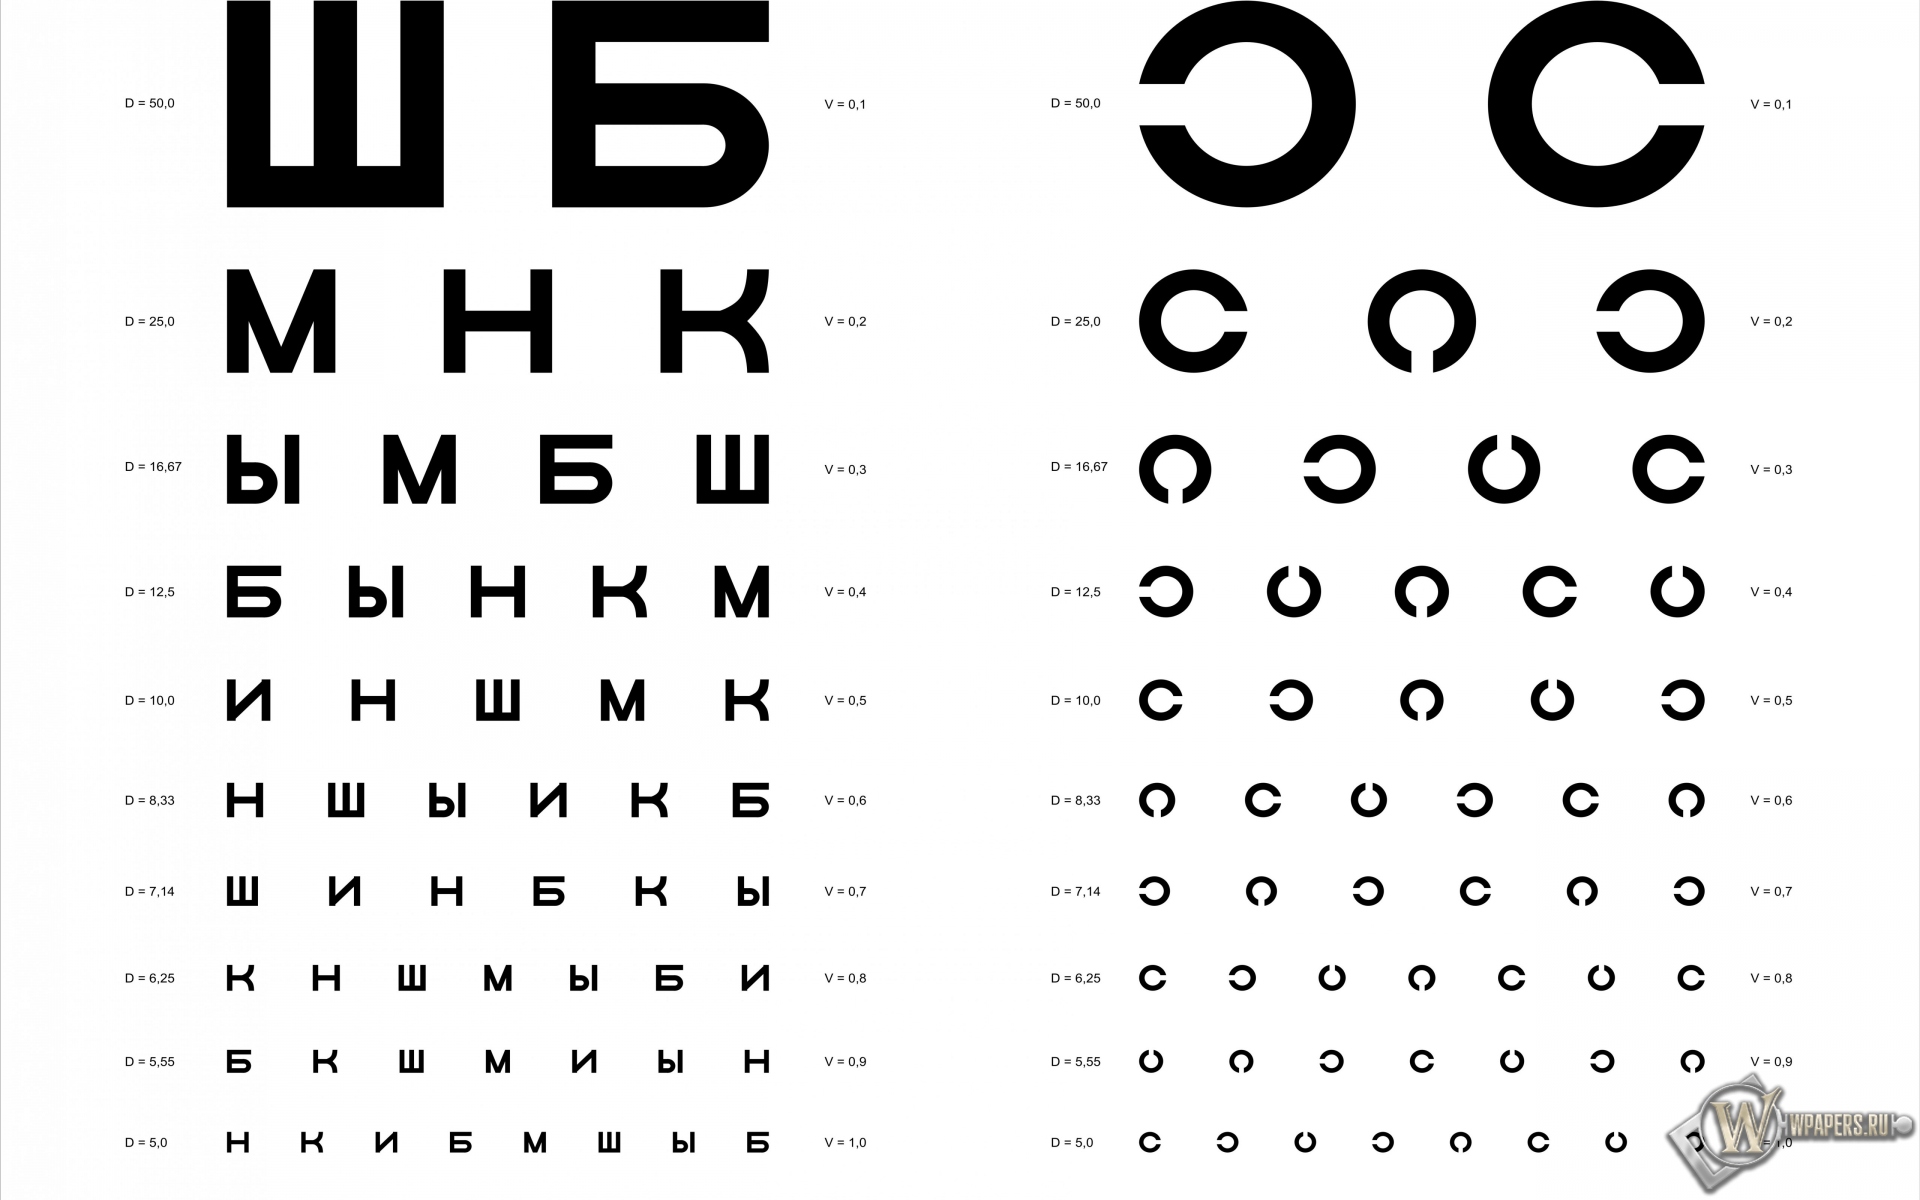 Таблица Д.А. Сивцева для проверки зрения 1920x1200